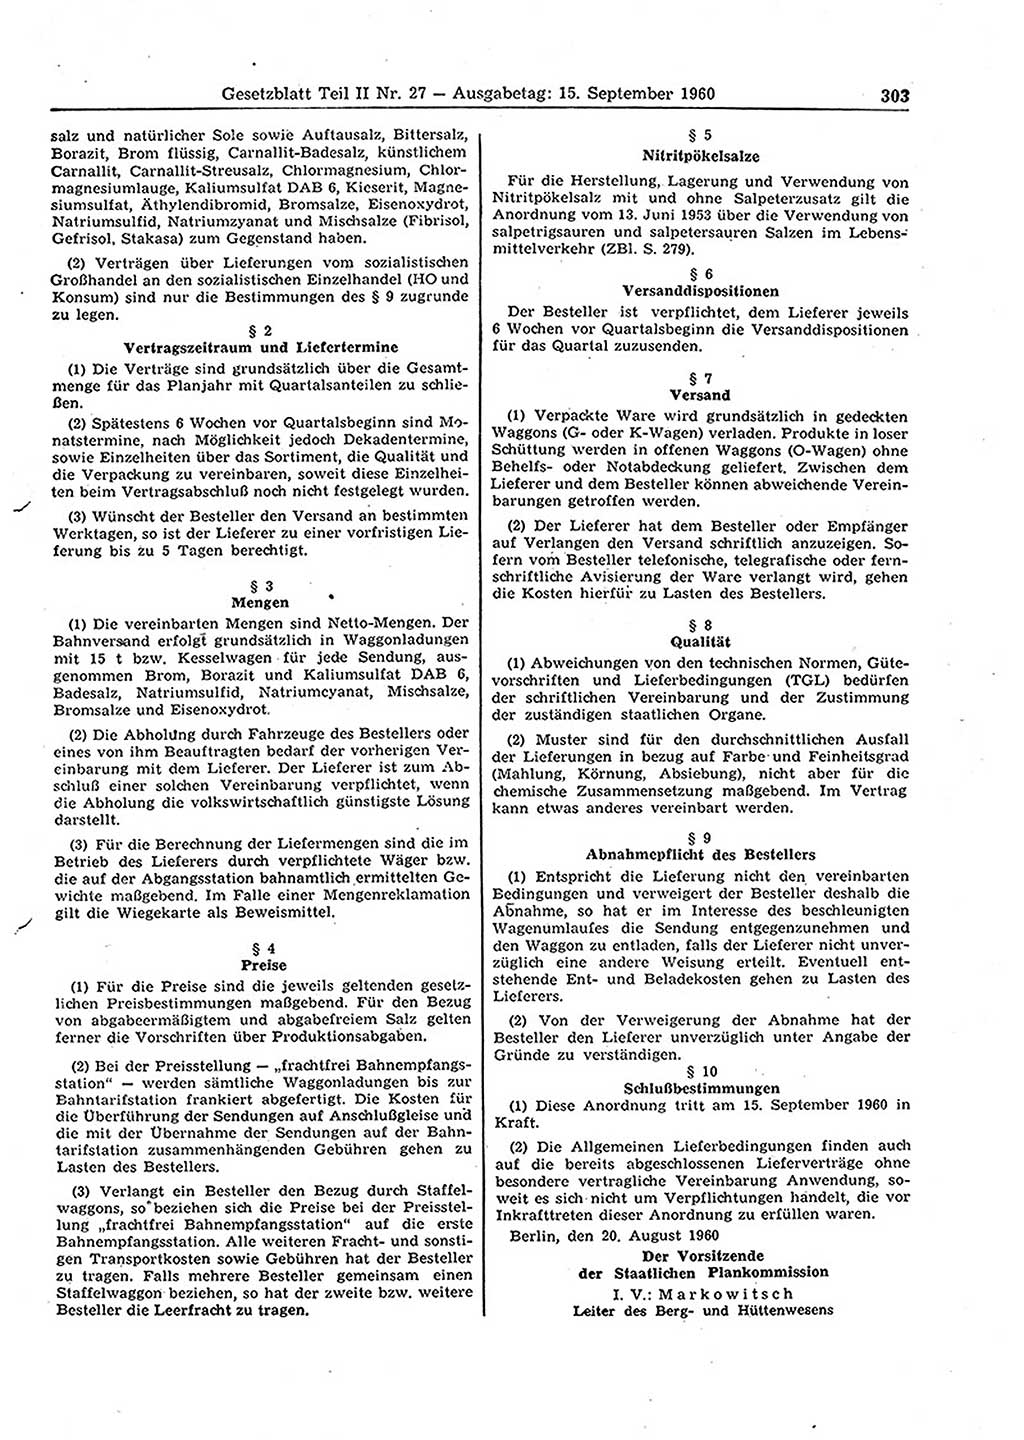 Gesetzblatt (GBl.) der Deutschen Demokratischen Republik (DDR) Teil ⅠⅠ 1960, Seite 303 (GBl. DDR ⅠⅠ 1960, S. 303)